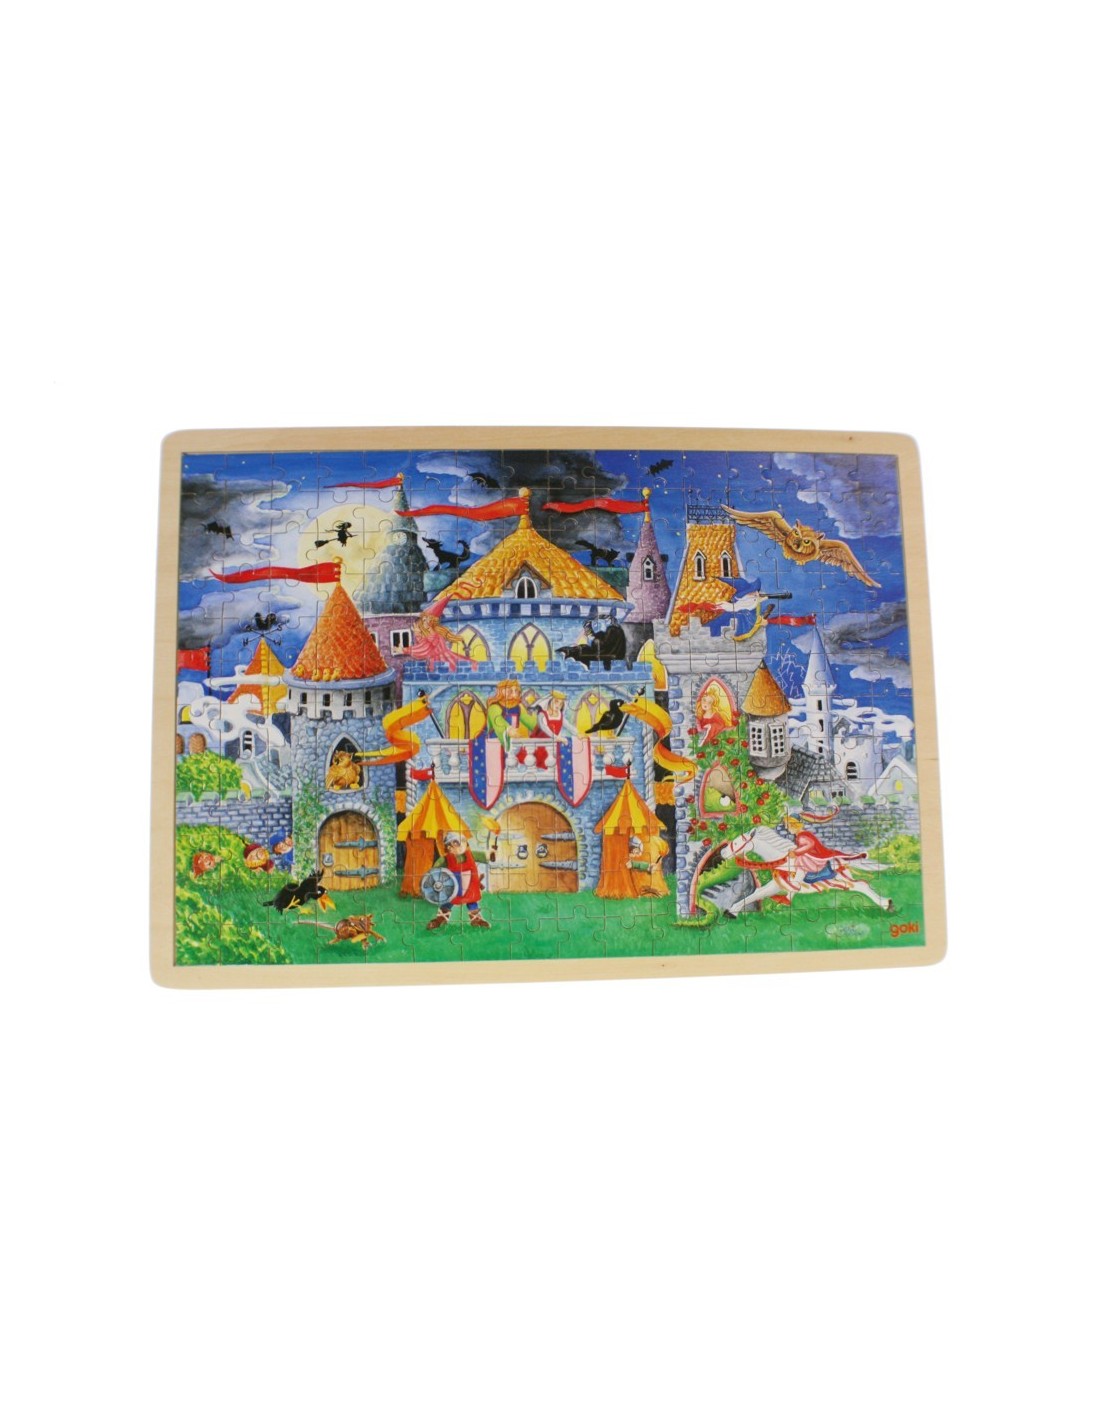 Puzzle de 192 piezas de madera con dibujo castillo encantado, rompecabezas para niños.